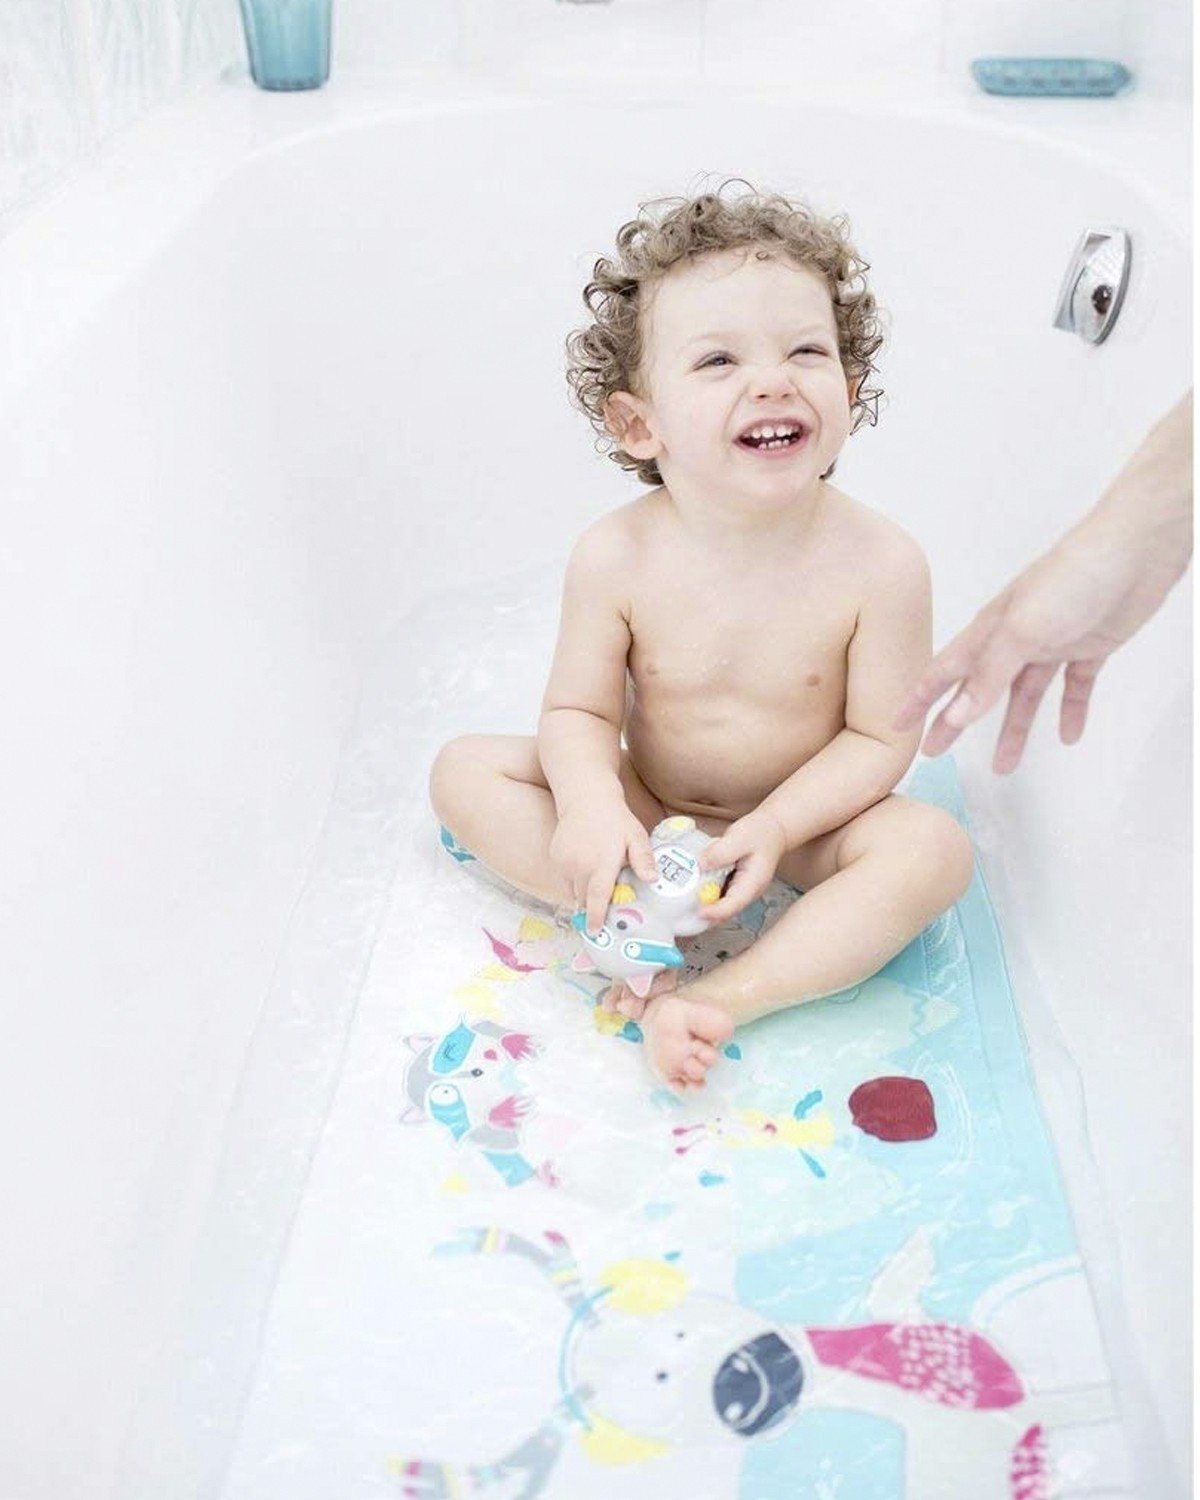 Alfombra bañera bebé con sensor de temperatura